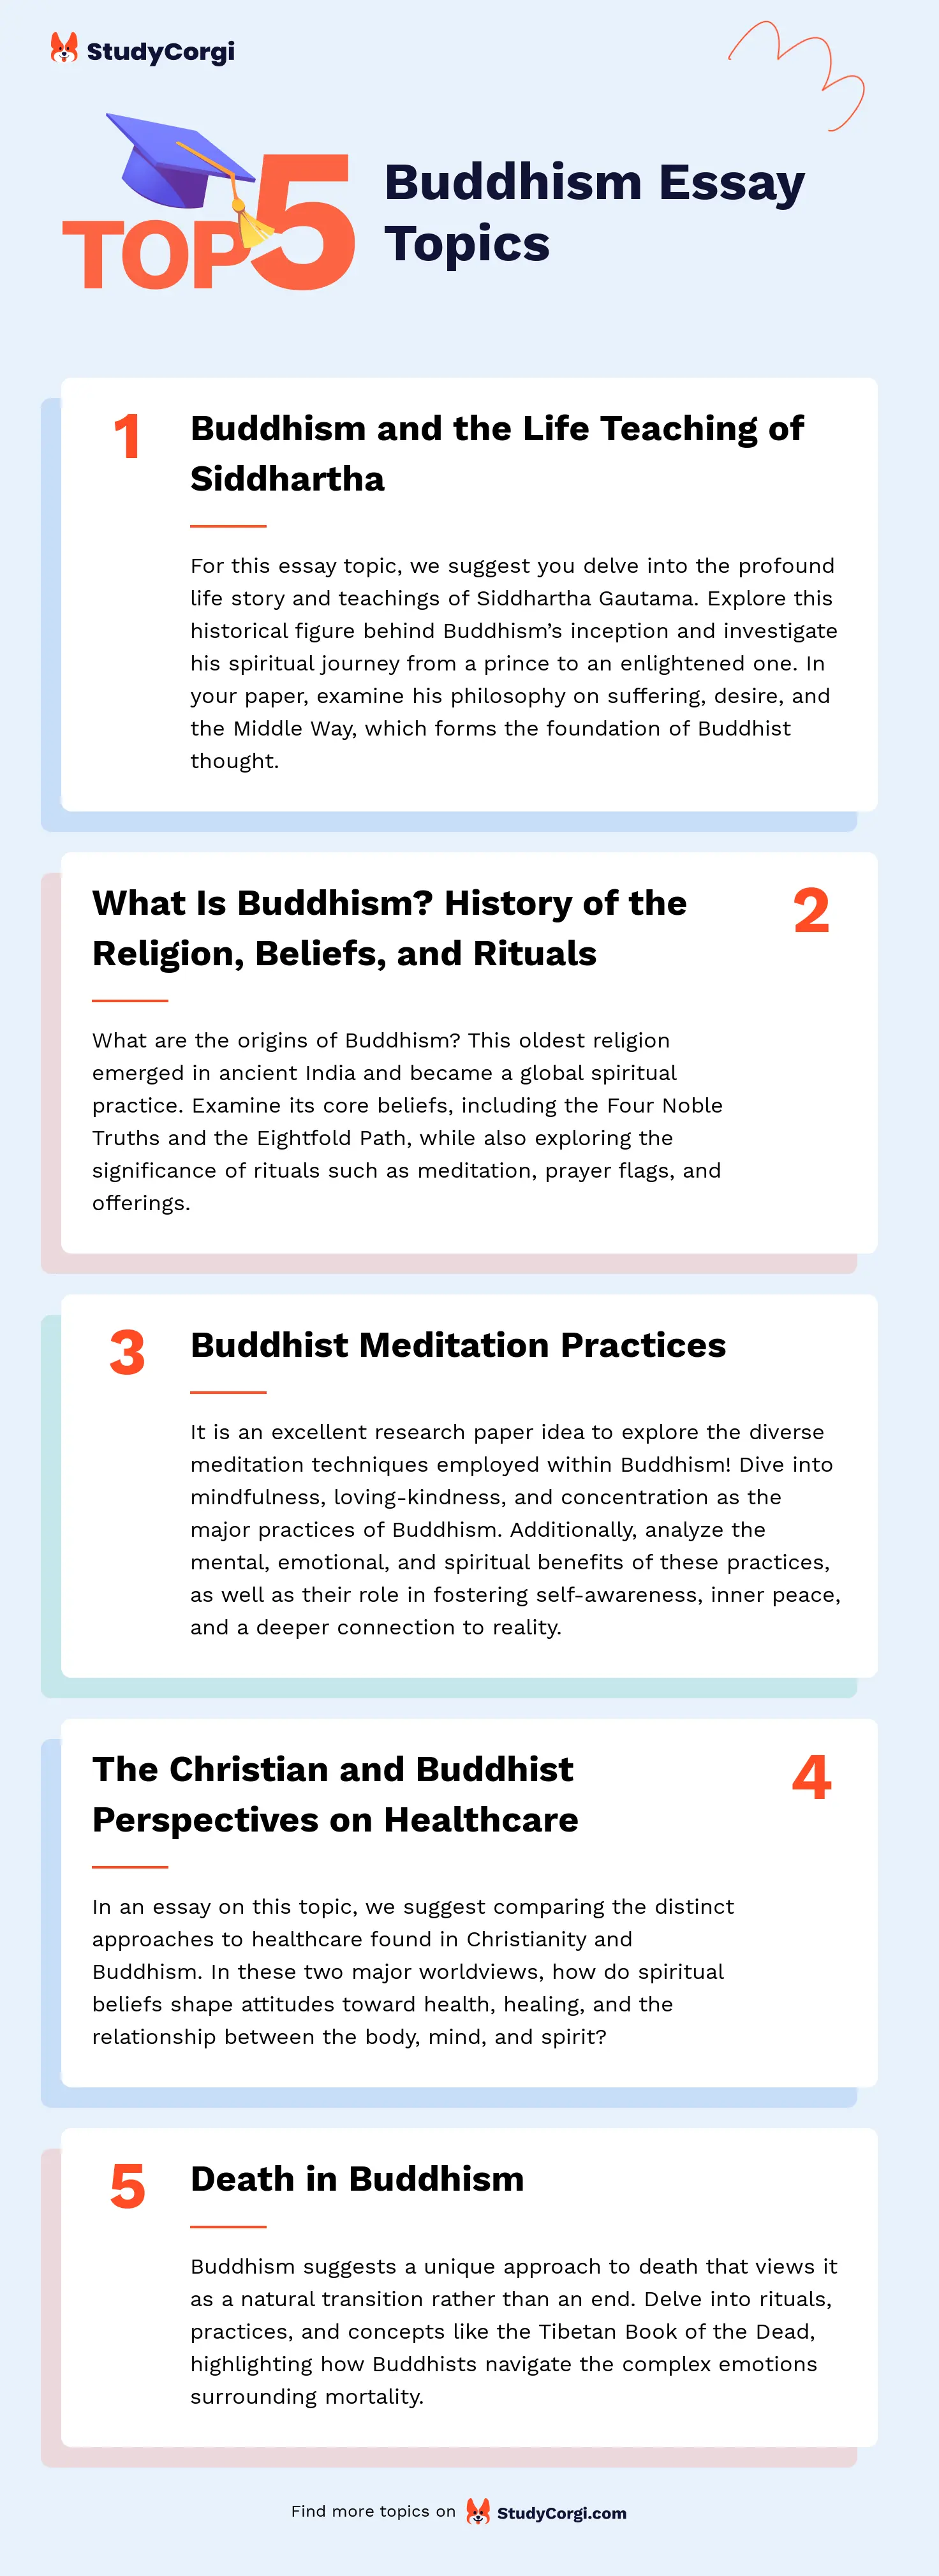 TOP-5 Buddhism Essay Topics